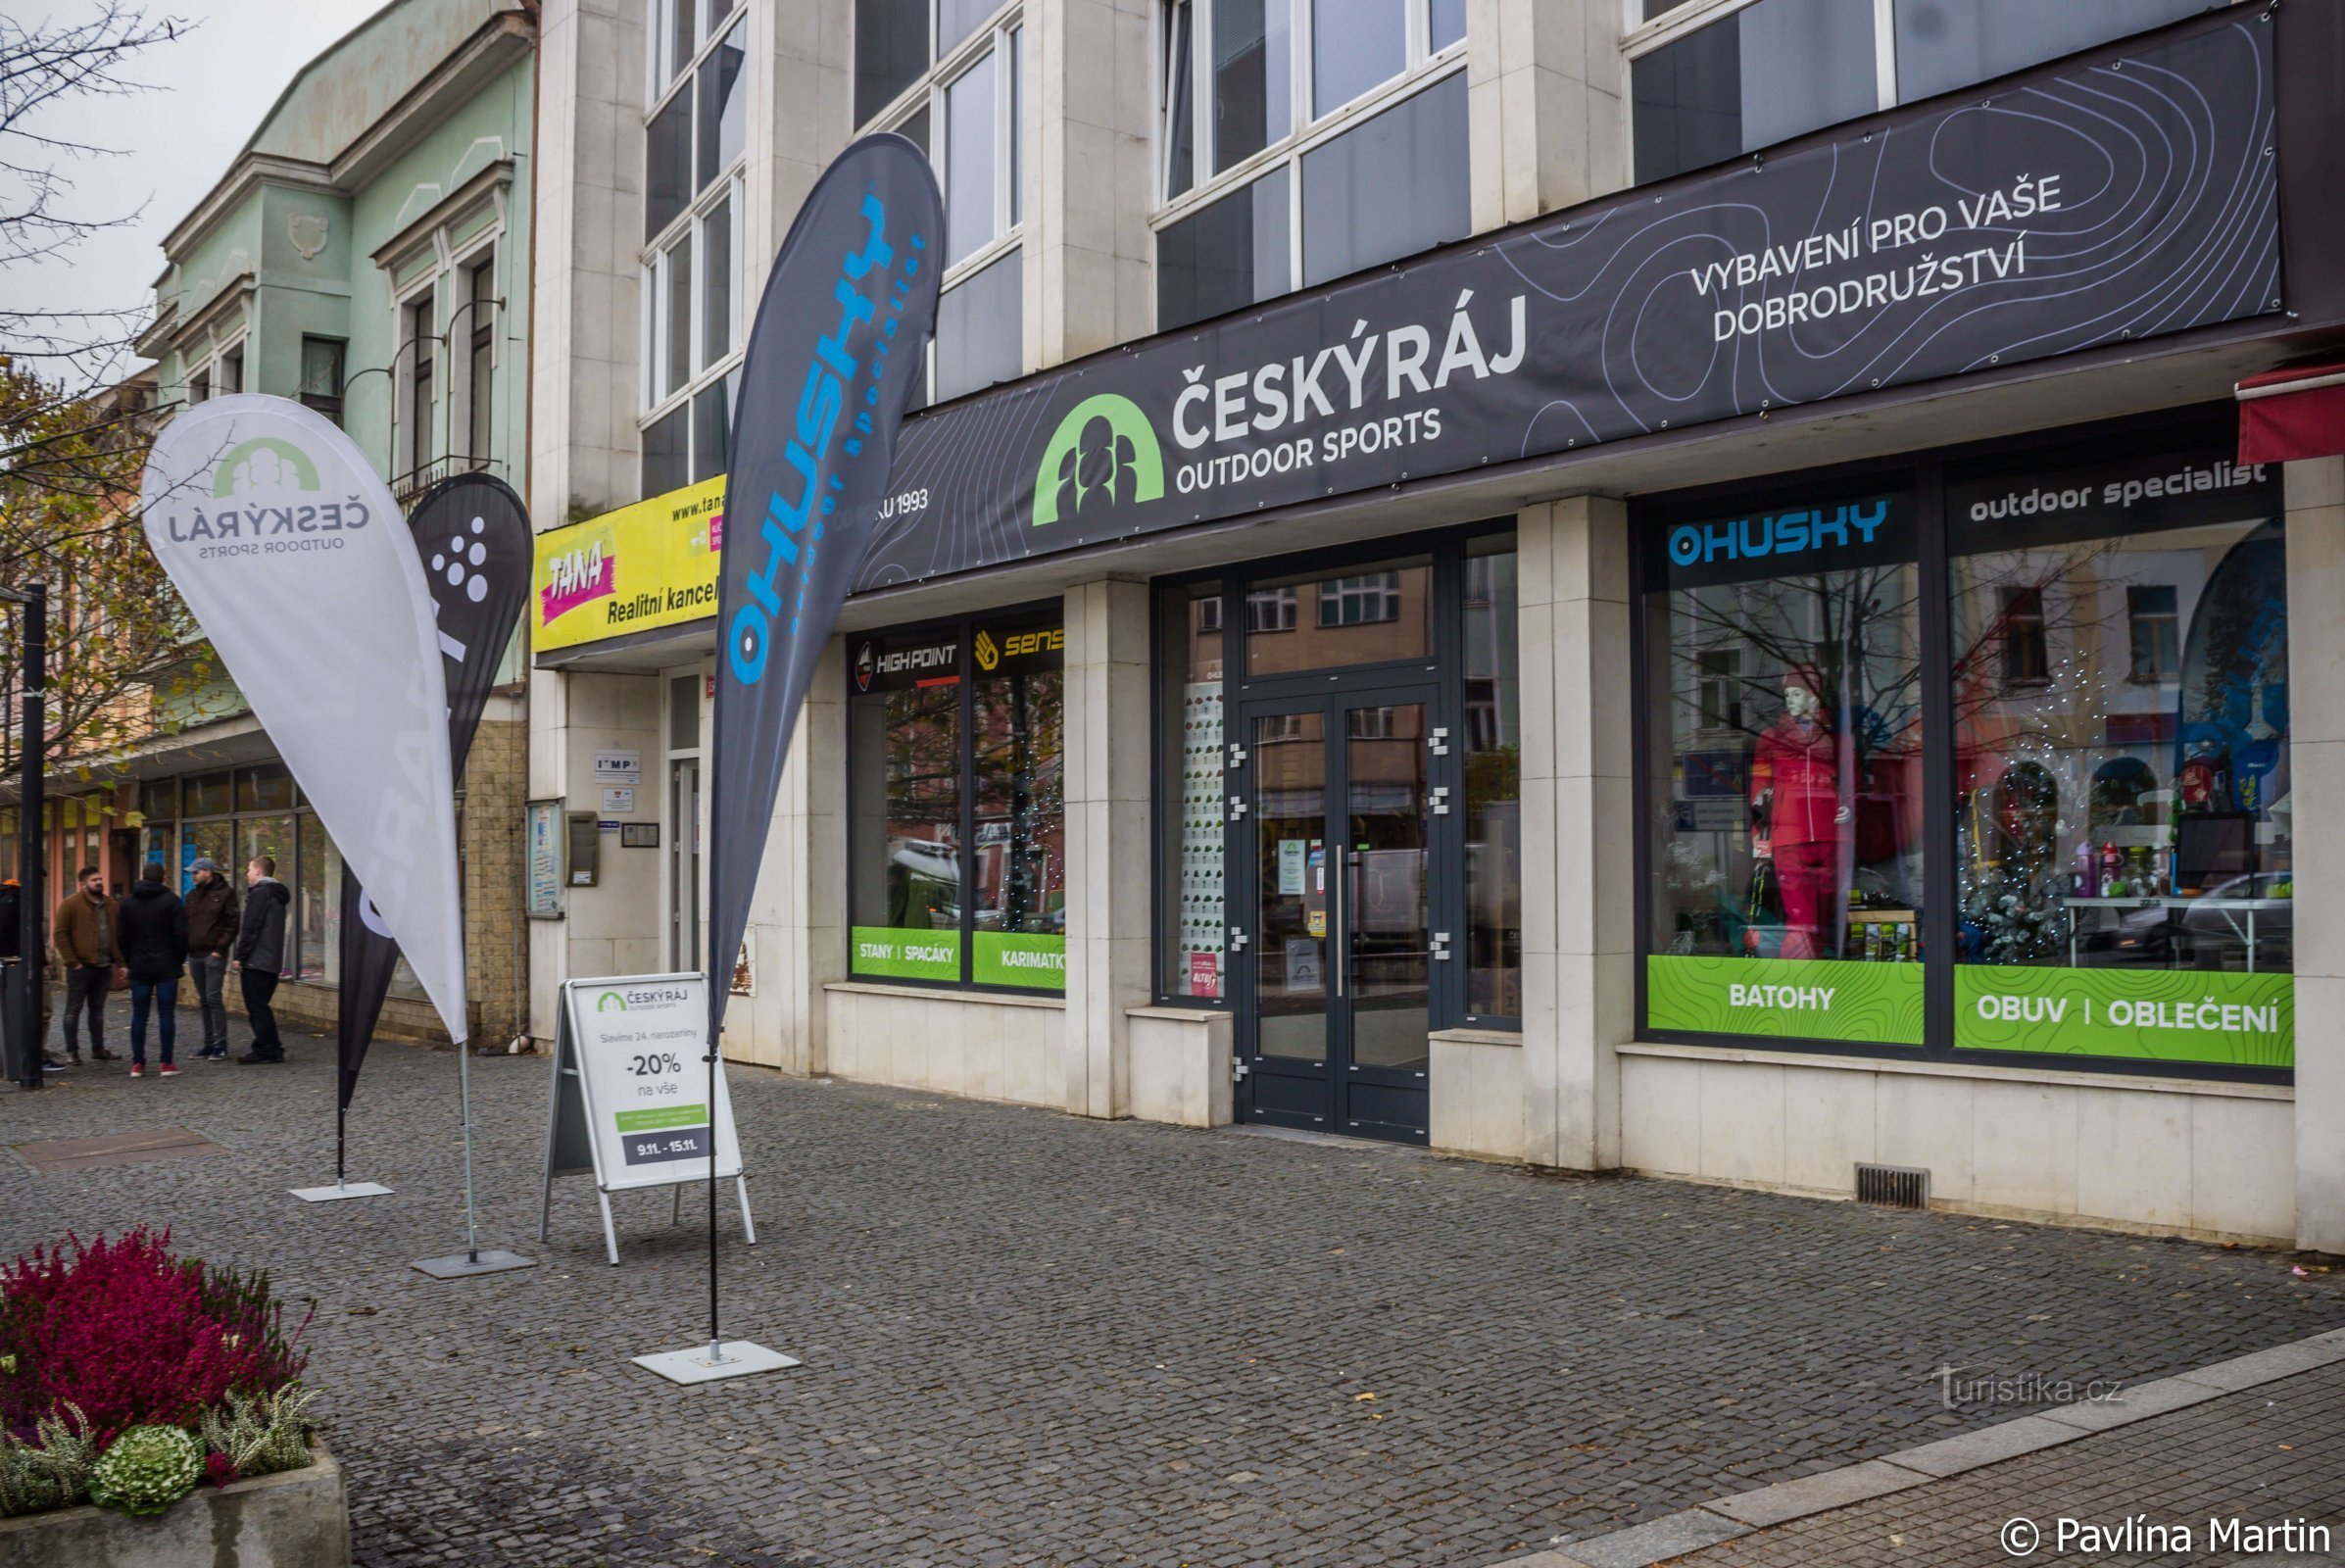 Cửa hàng ngoài trời Český raj kỷ niệm 25 năm và bạn cũng có thể giảm giá 20% cho mọi thứ